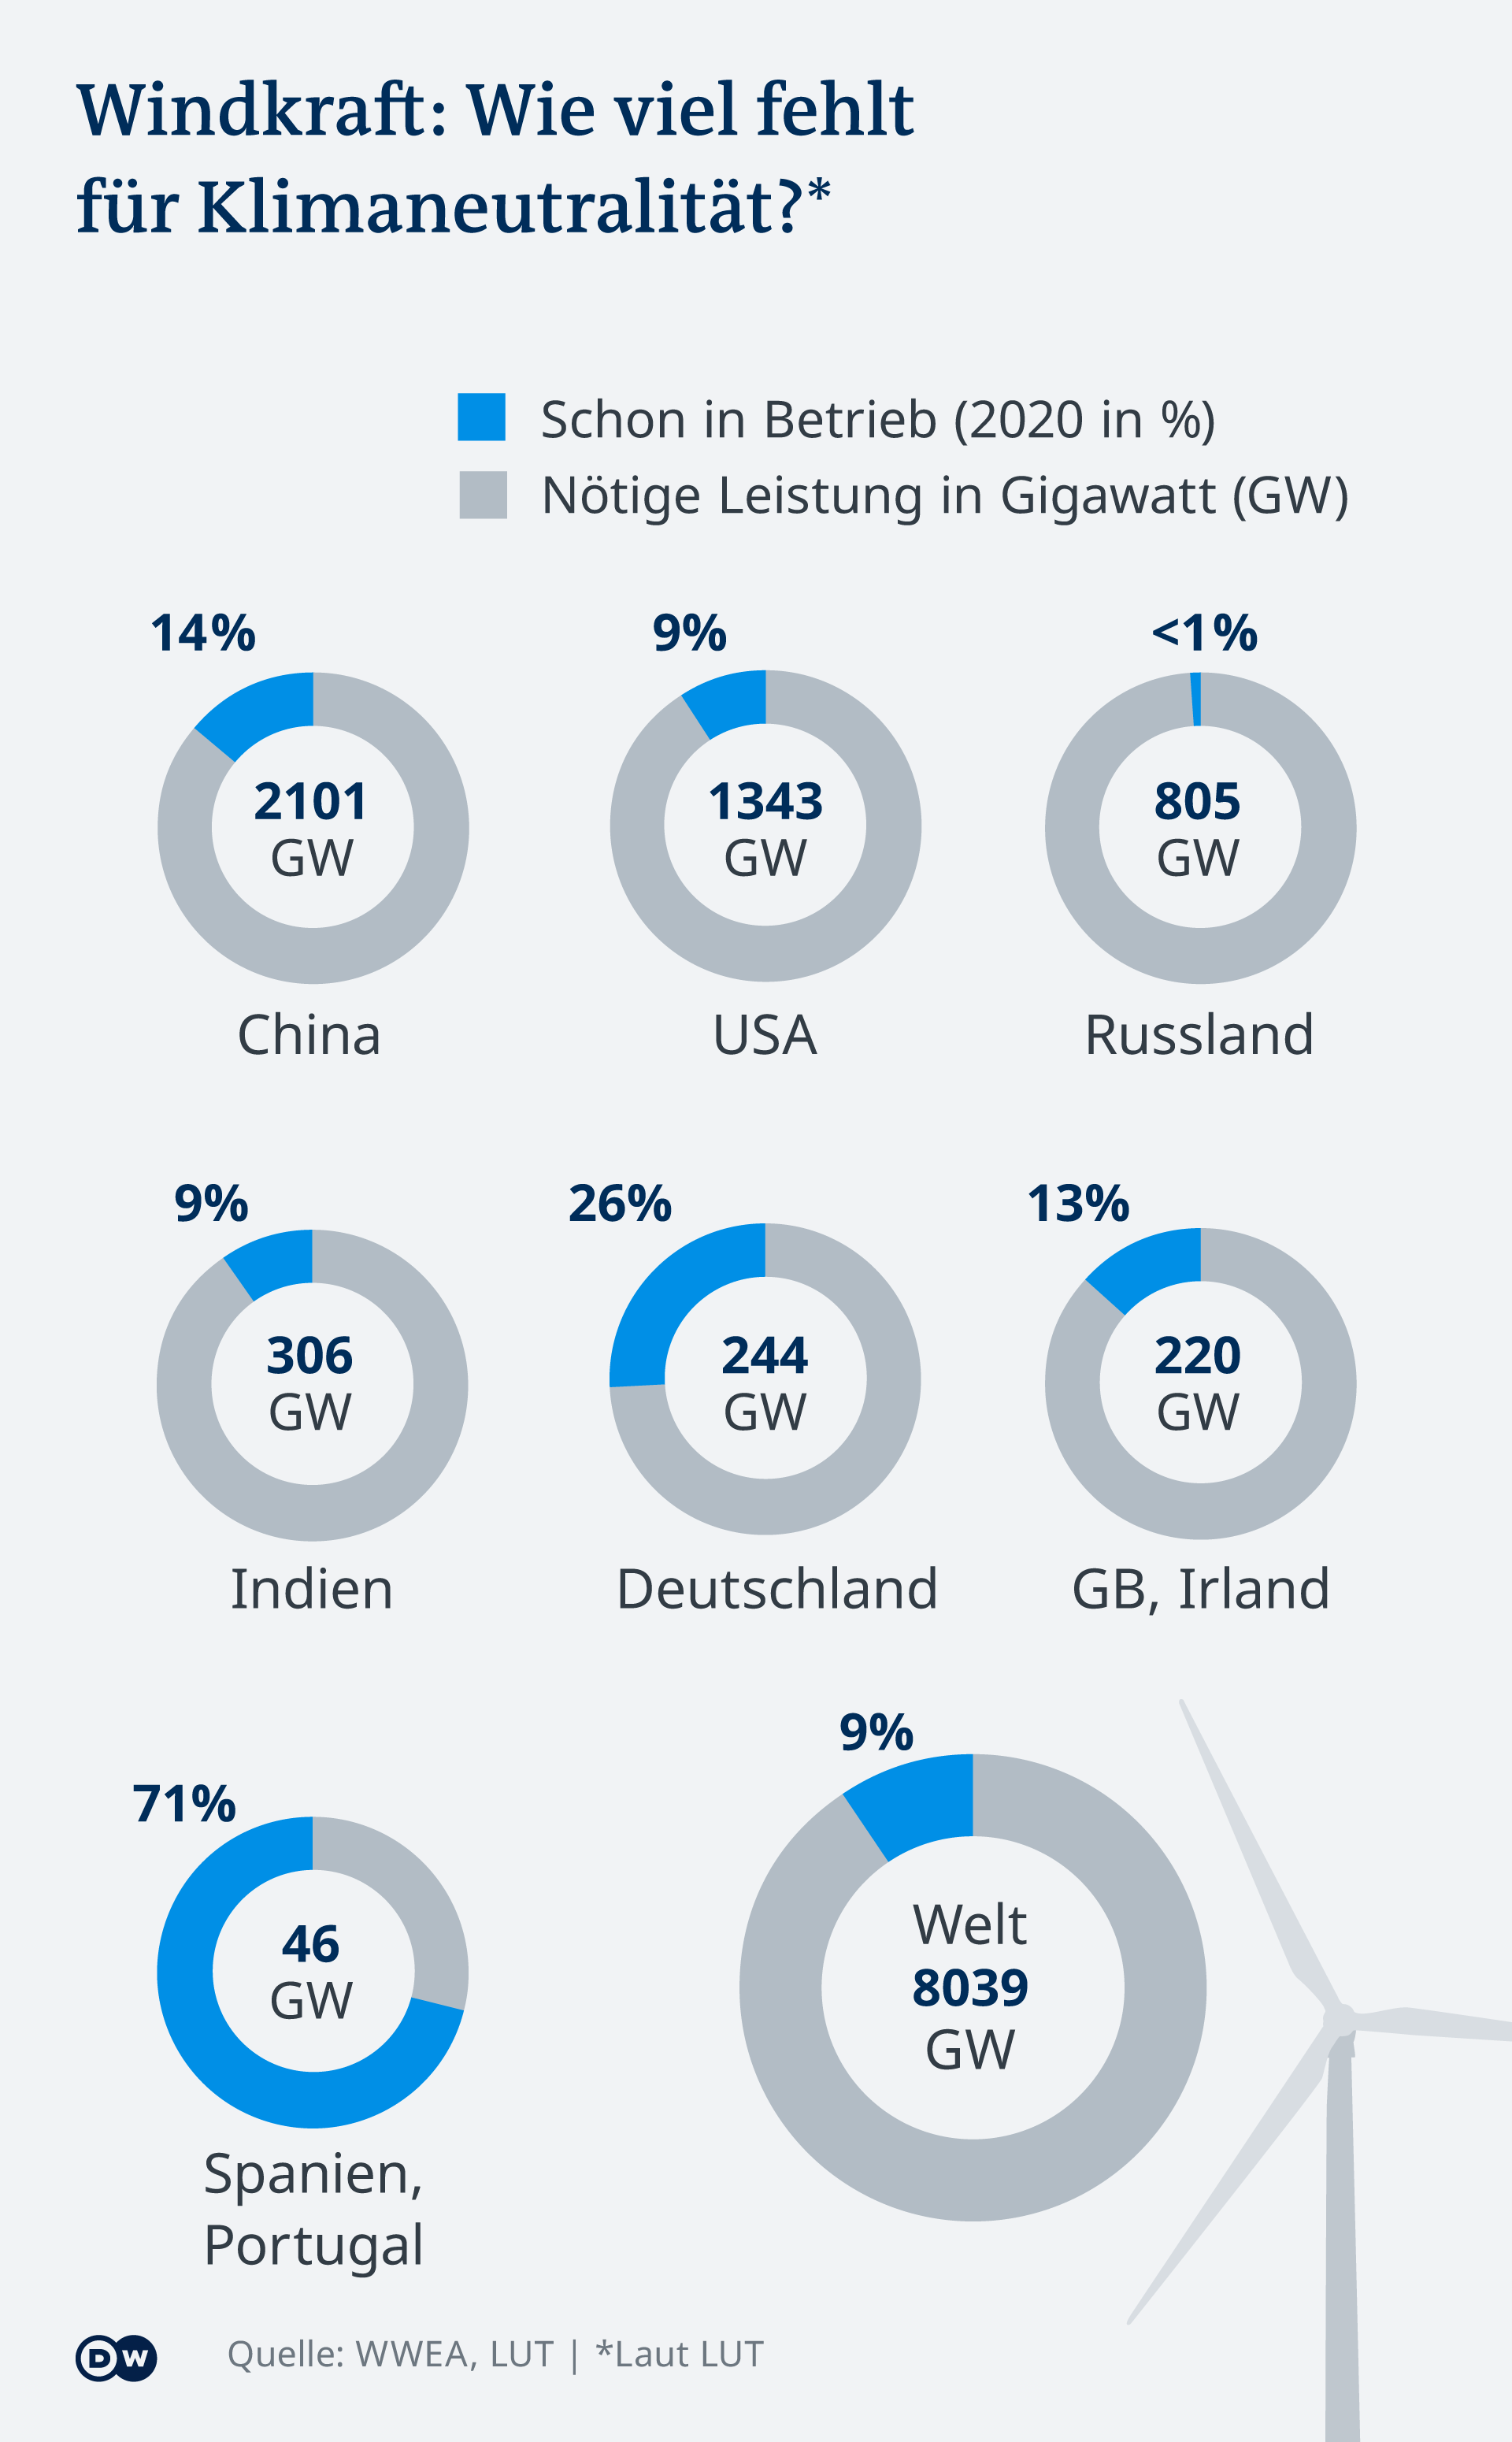 Infografik: Wie viel fehlt für Klimaneutralität? Wie viel ist schon installiert? USA, China, Russland, Deutschland, Spanien & Portugal, GW/Irland, Indien, Welt 